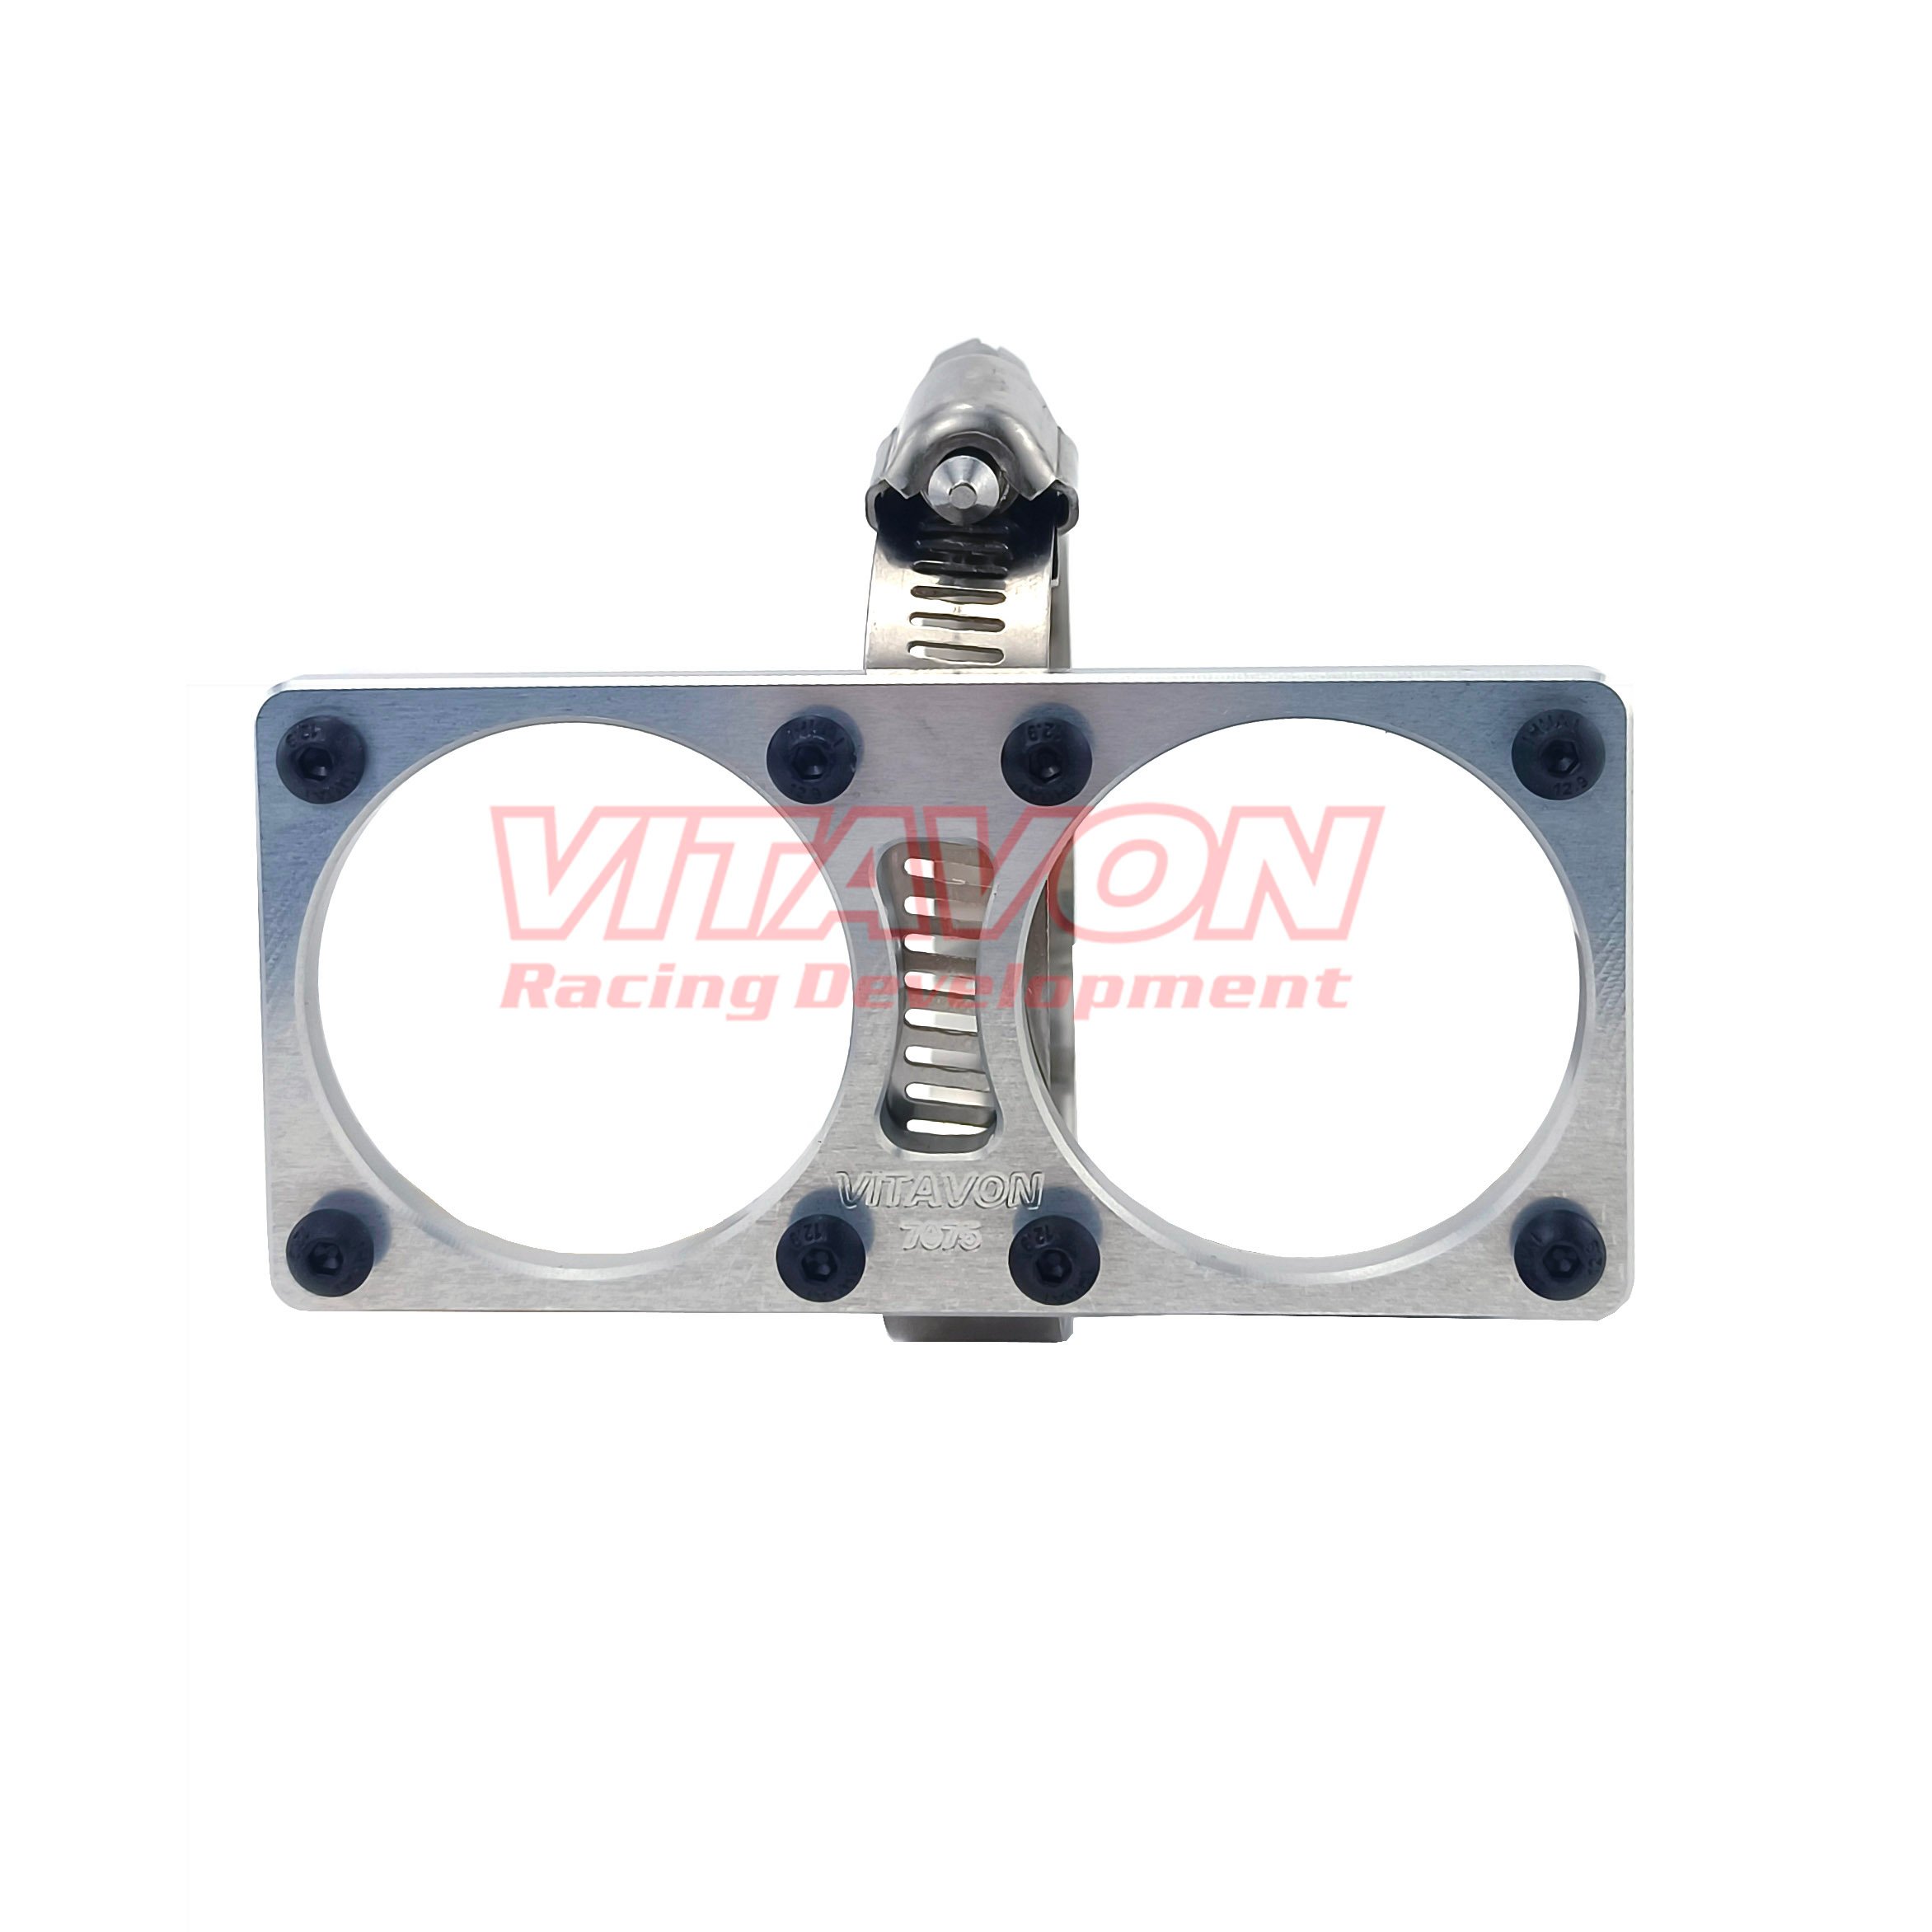 VITAVON CNC Alu7075 Dual 40mm Fan Holder & Belt Lock dia 56-70mm